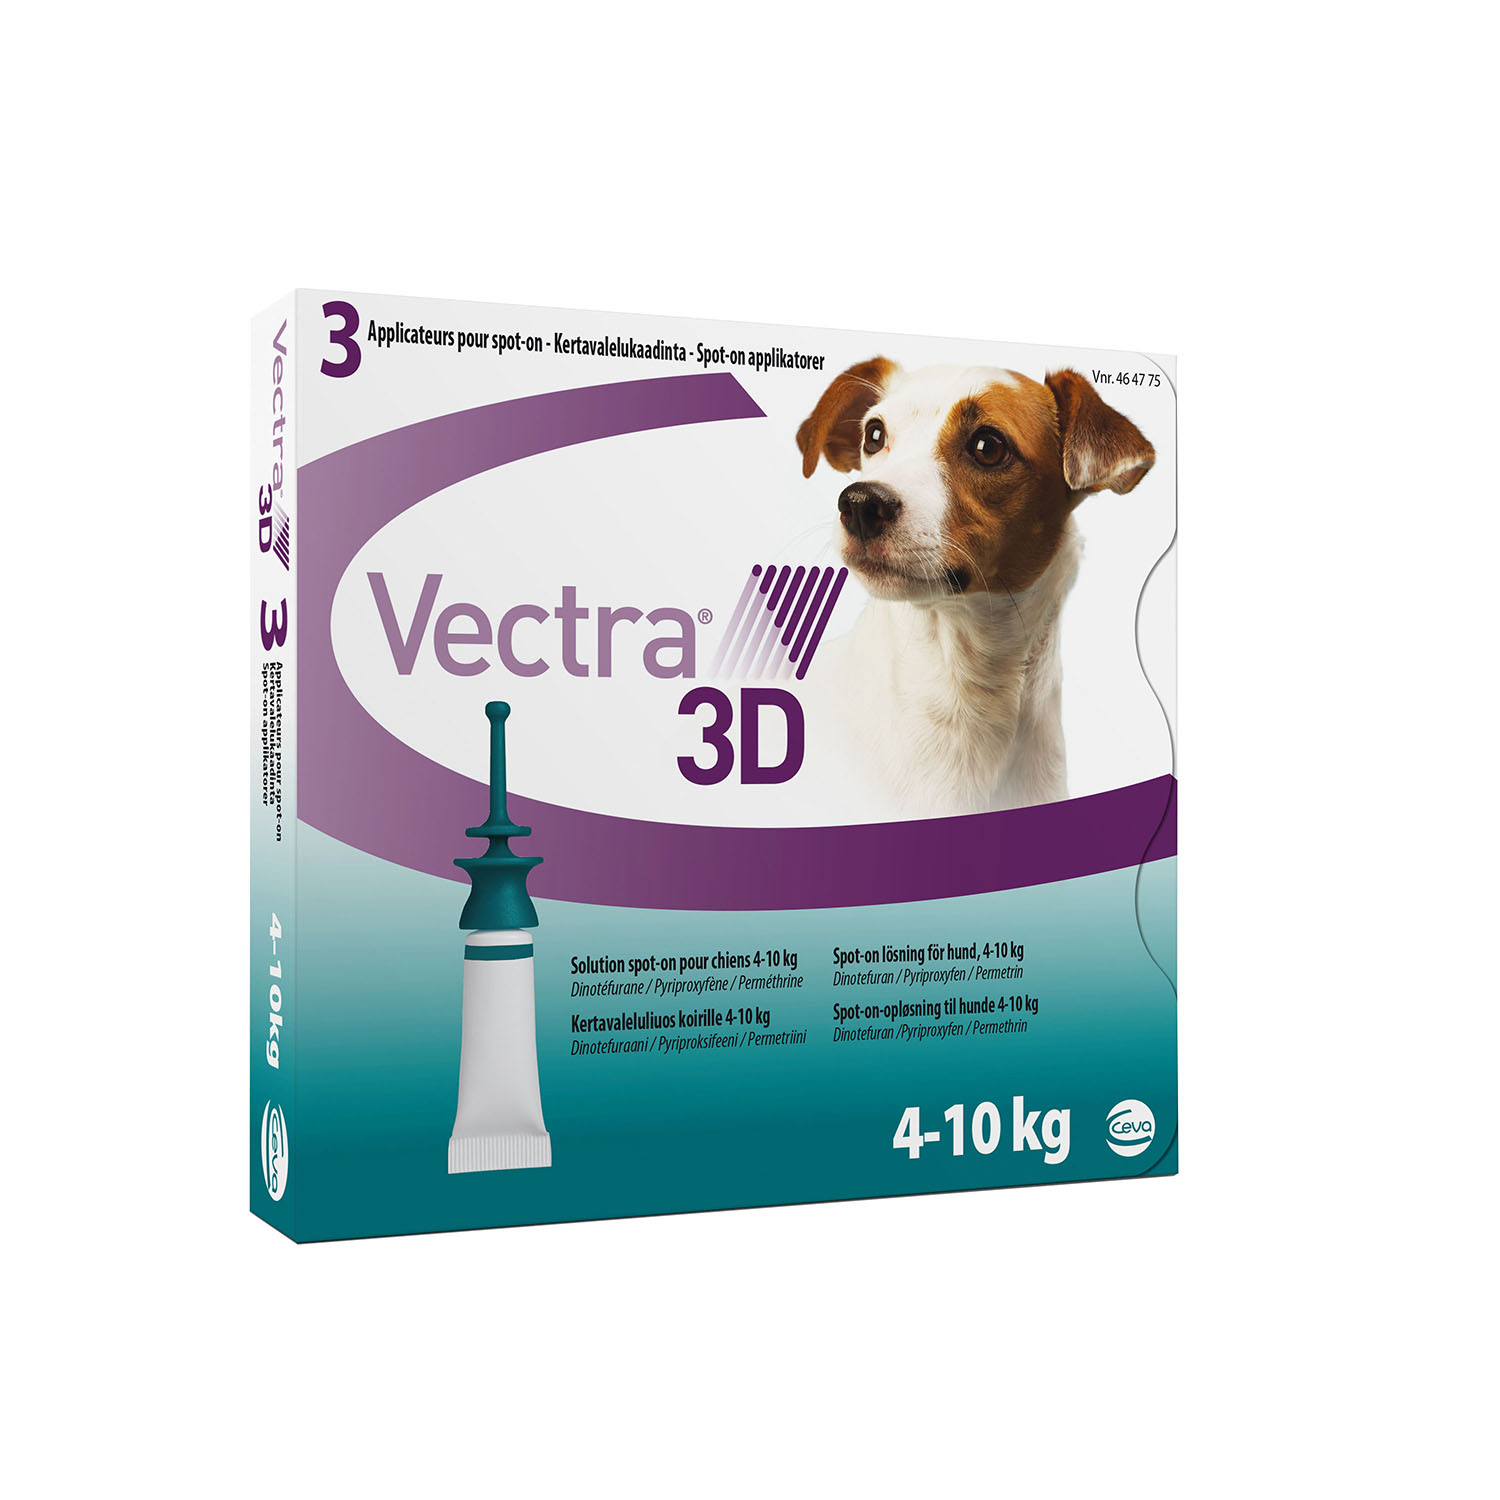 Vectra 3D капли от блох и клещей для собак весом от 4 кг до 10 кг